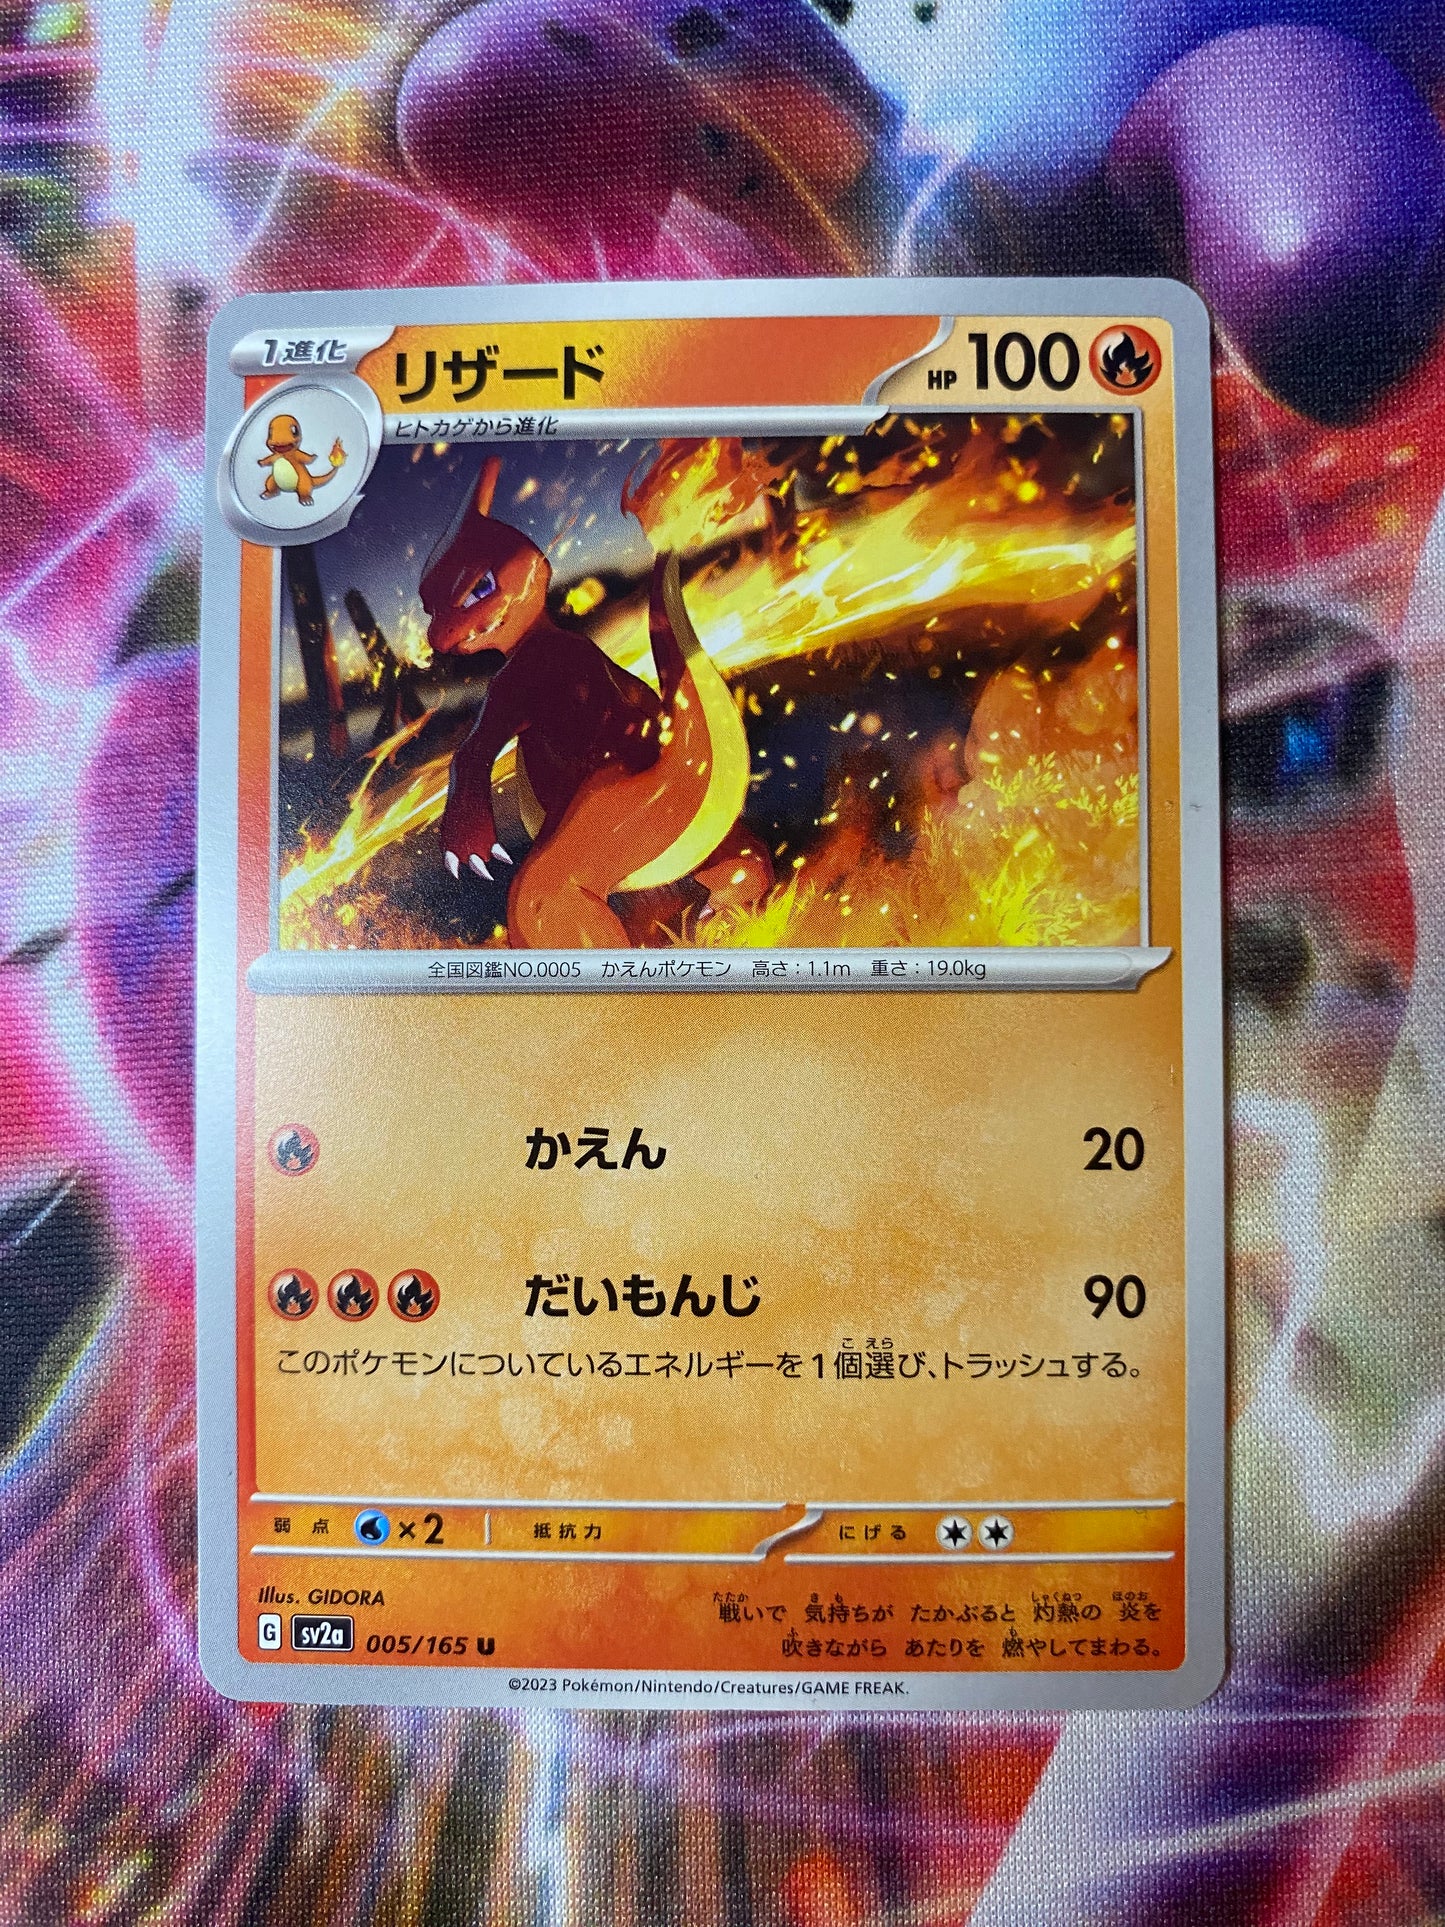 Charmeleon - Pokémon Card 151 Japanese